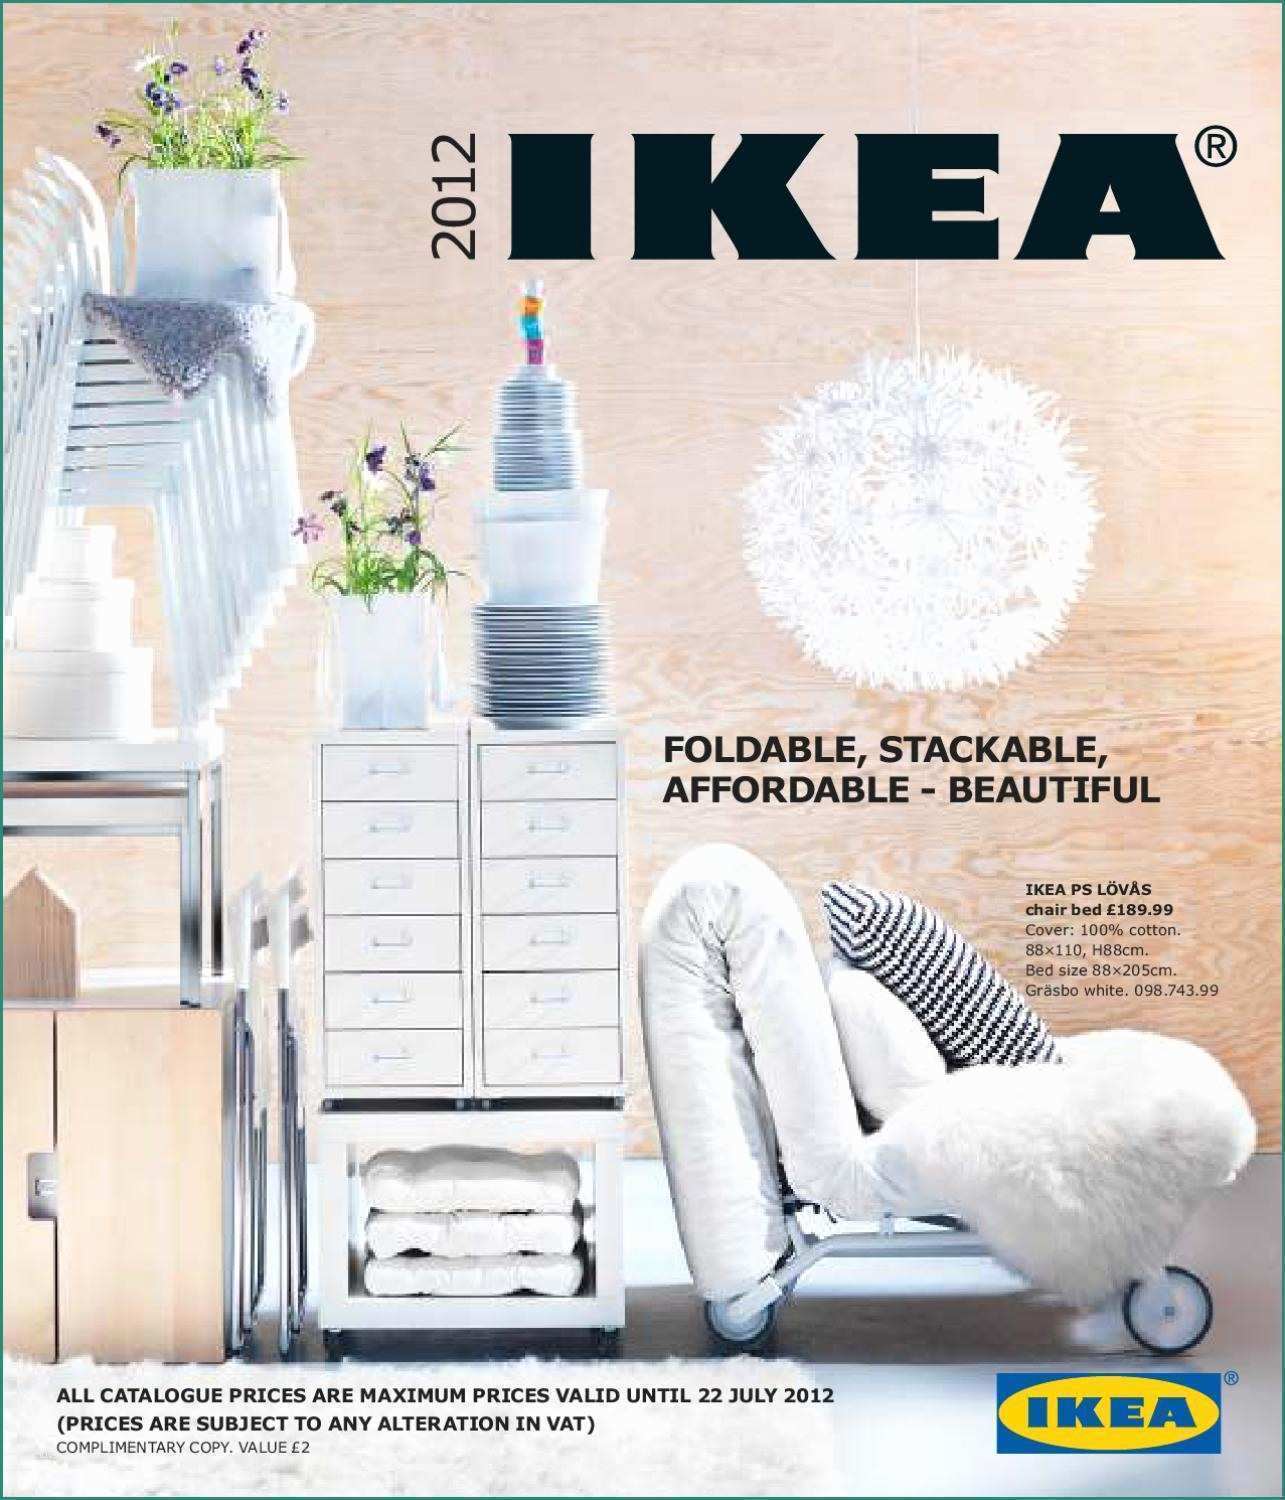 Cubo Plexiglass Ikea E Ikea Catalogue 2012 by Katalogpromocii issuu